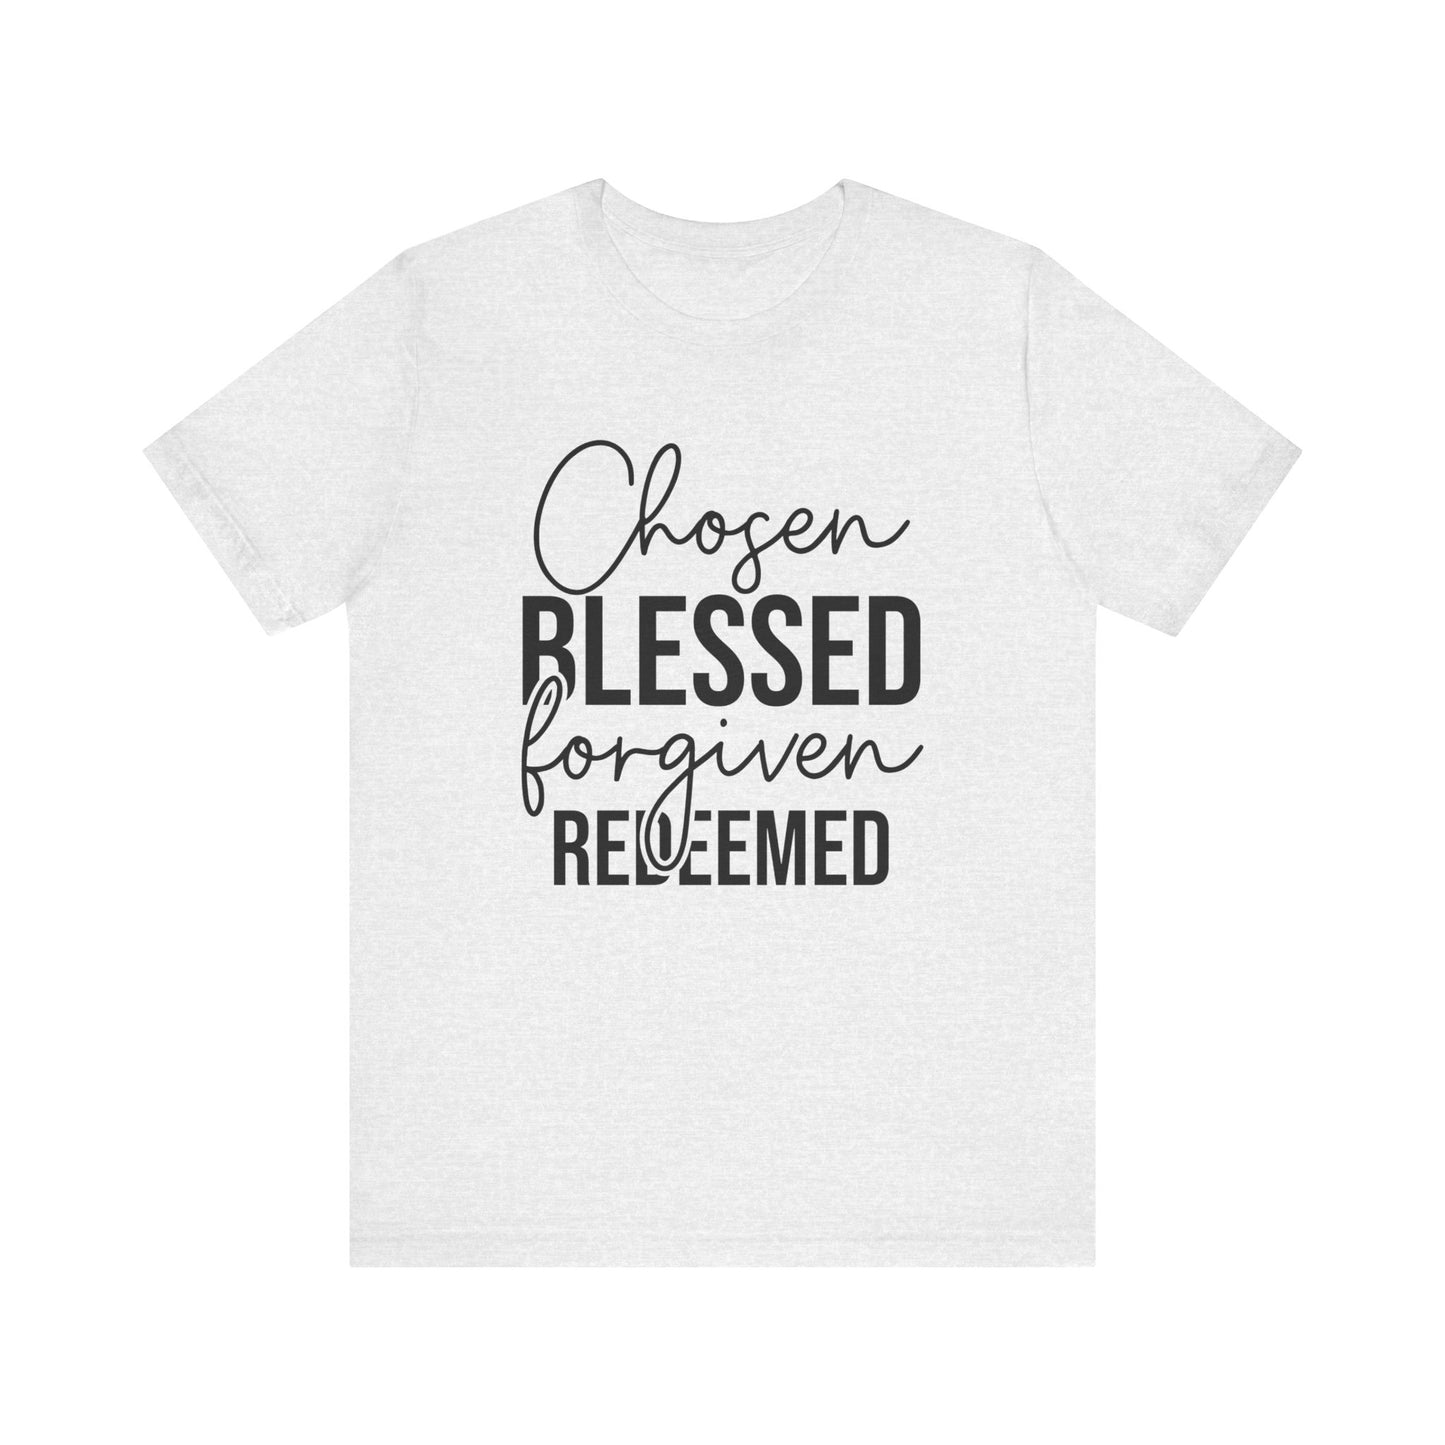 Chosen Blessed Forgiven Redeemed  Women's Short Sleeve Tee